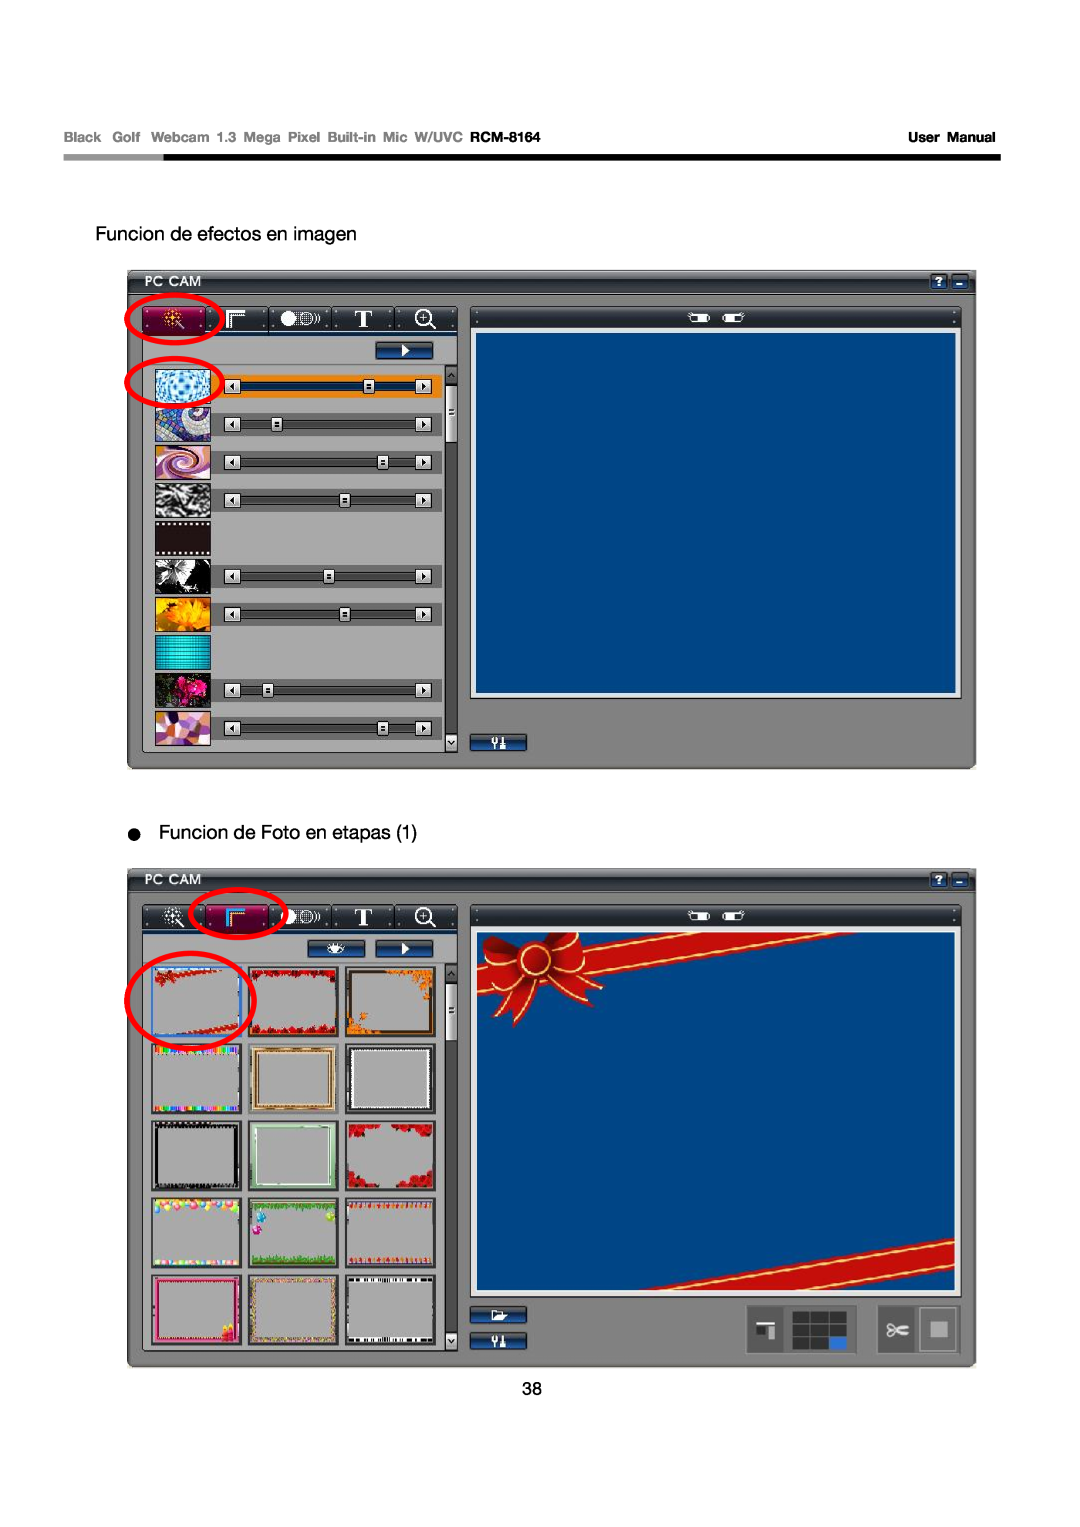 Rosewill RCM-8164 user manual Funcion de efectos en imagen Funcion de Foto en etapas, User Manual 